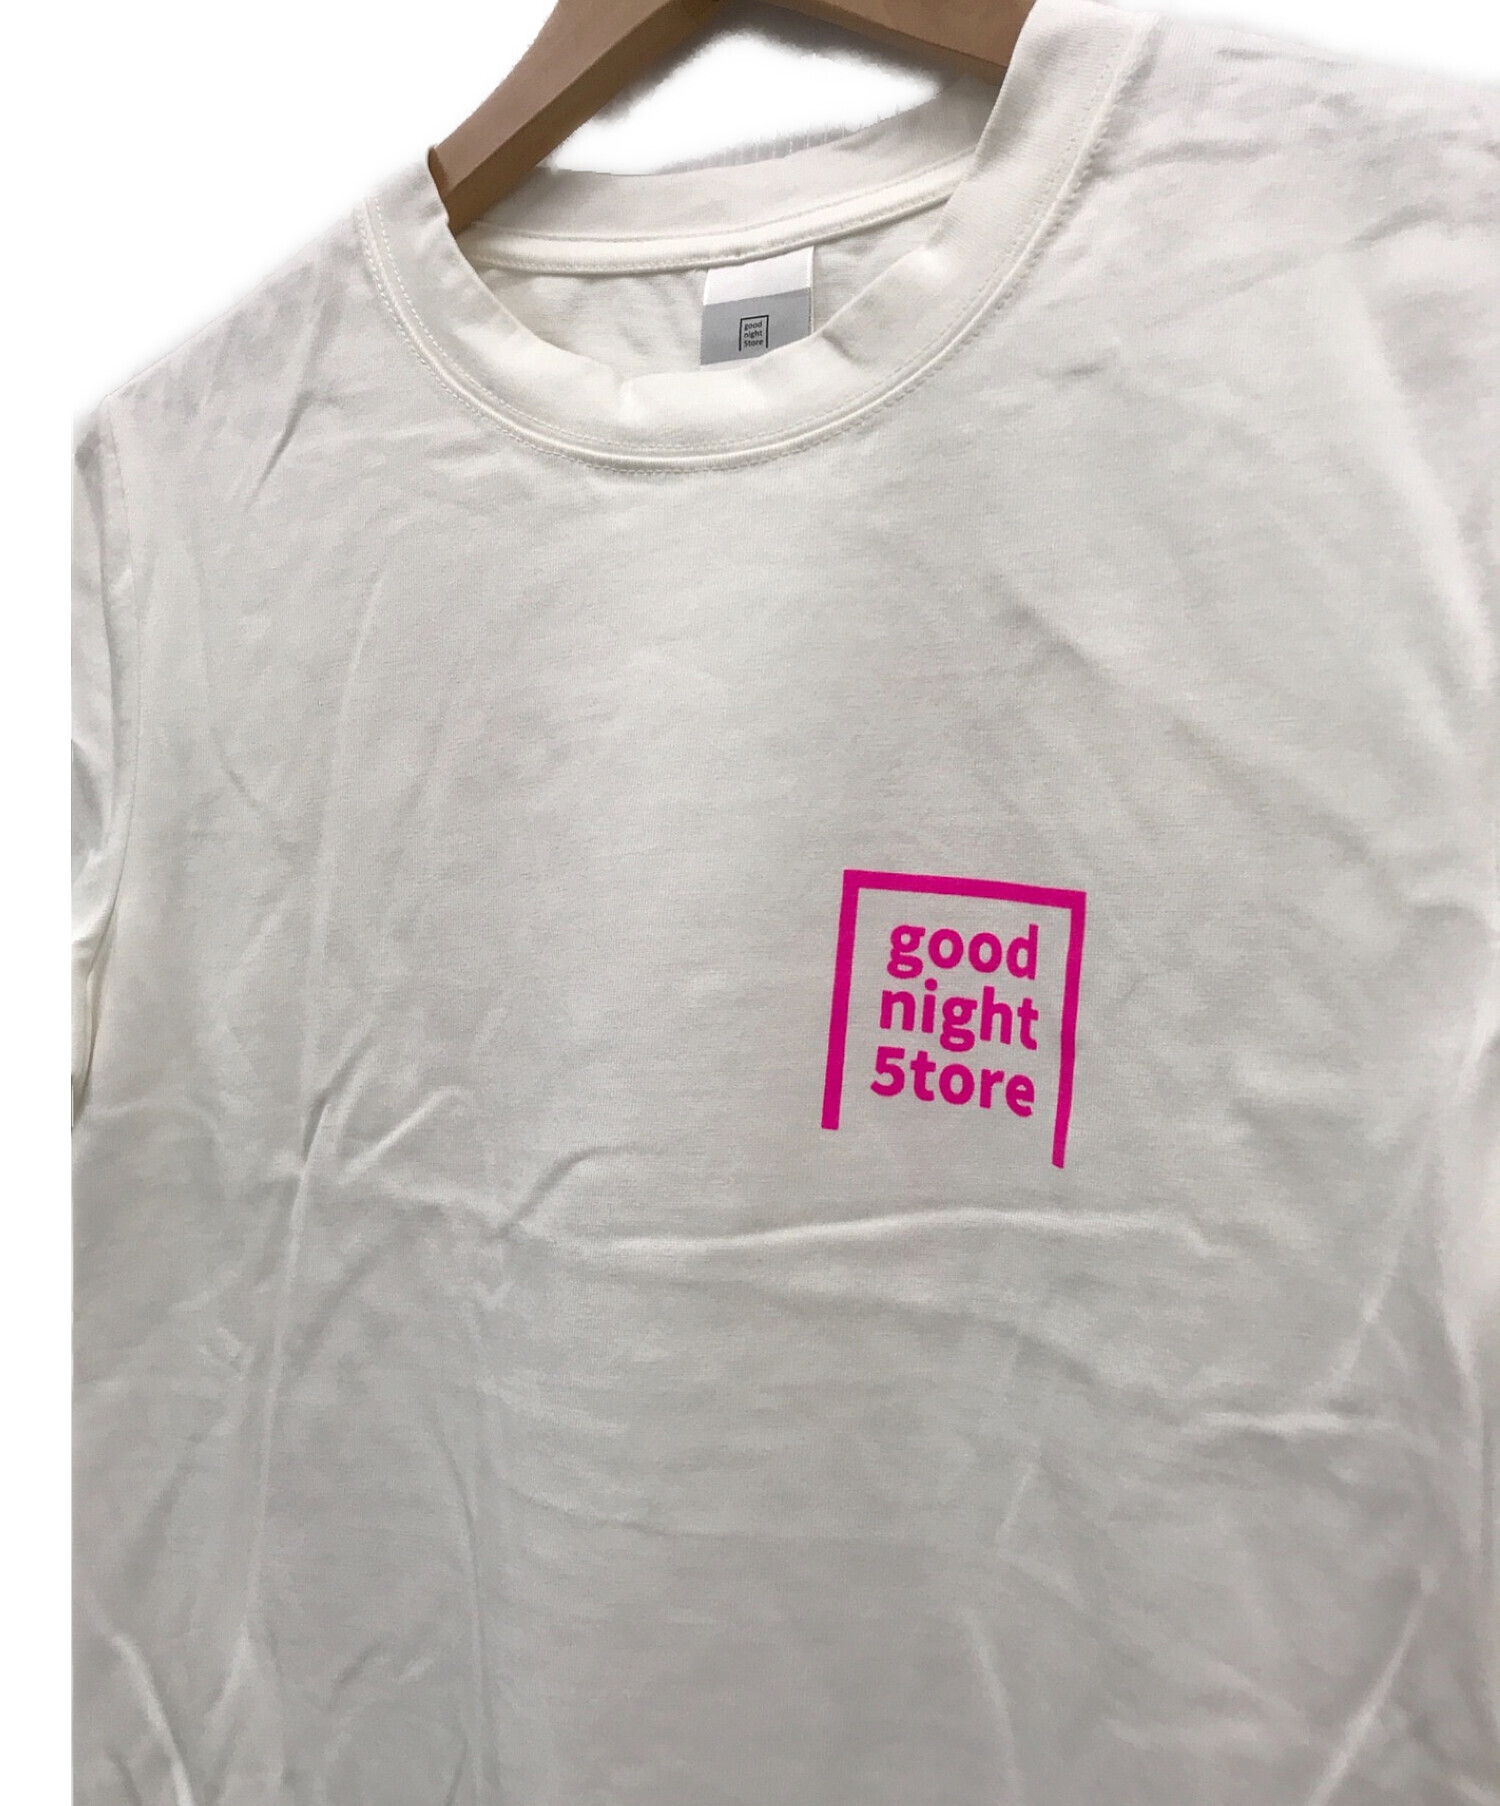 GOOD NIGHT 5TORE (グッドナイトストア) ロゴプリントTシャツ / GN046 t-shirt logo-neon pink ホワイト  サイズ:FREE 未使用品